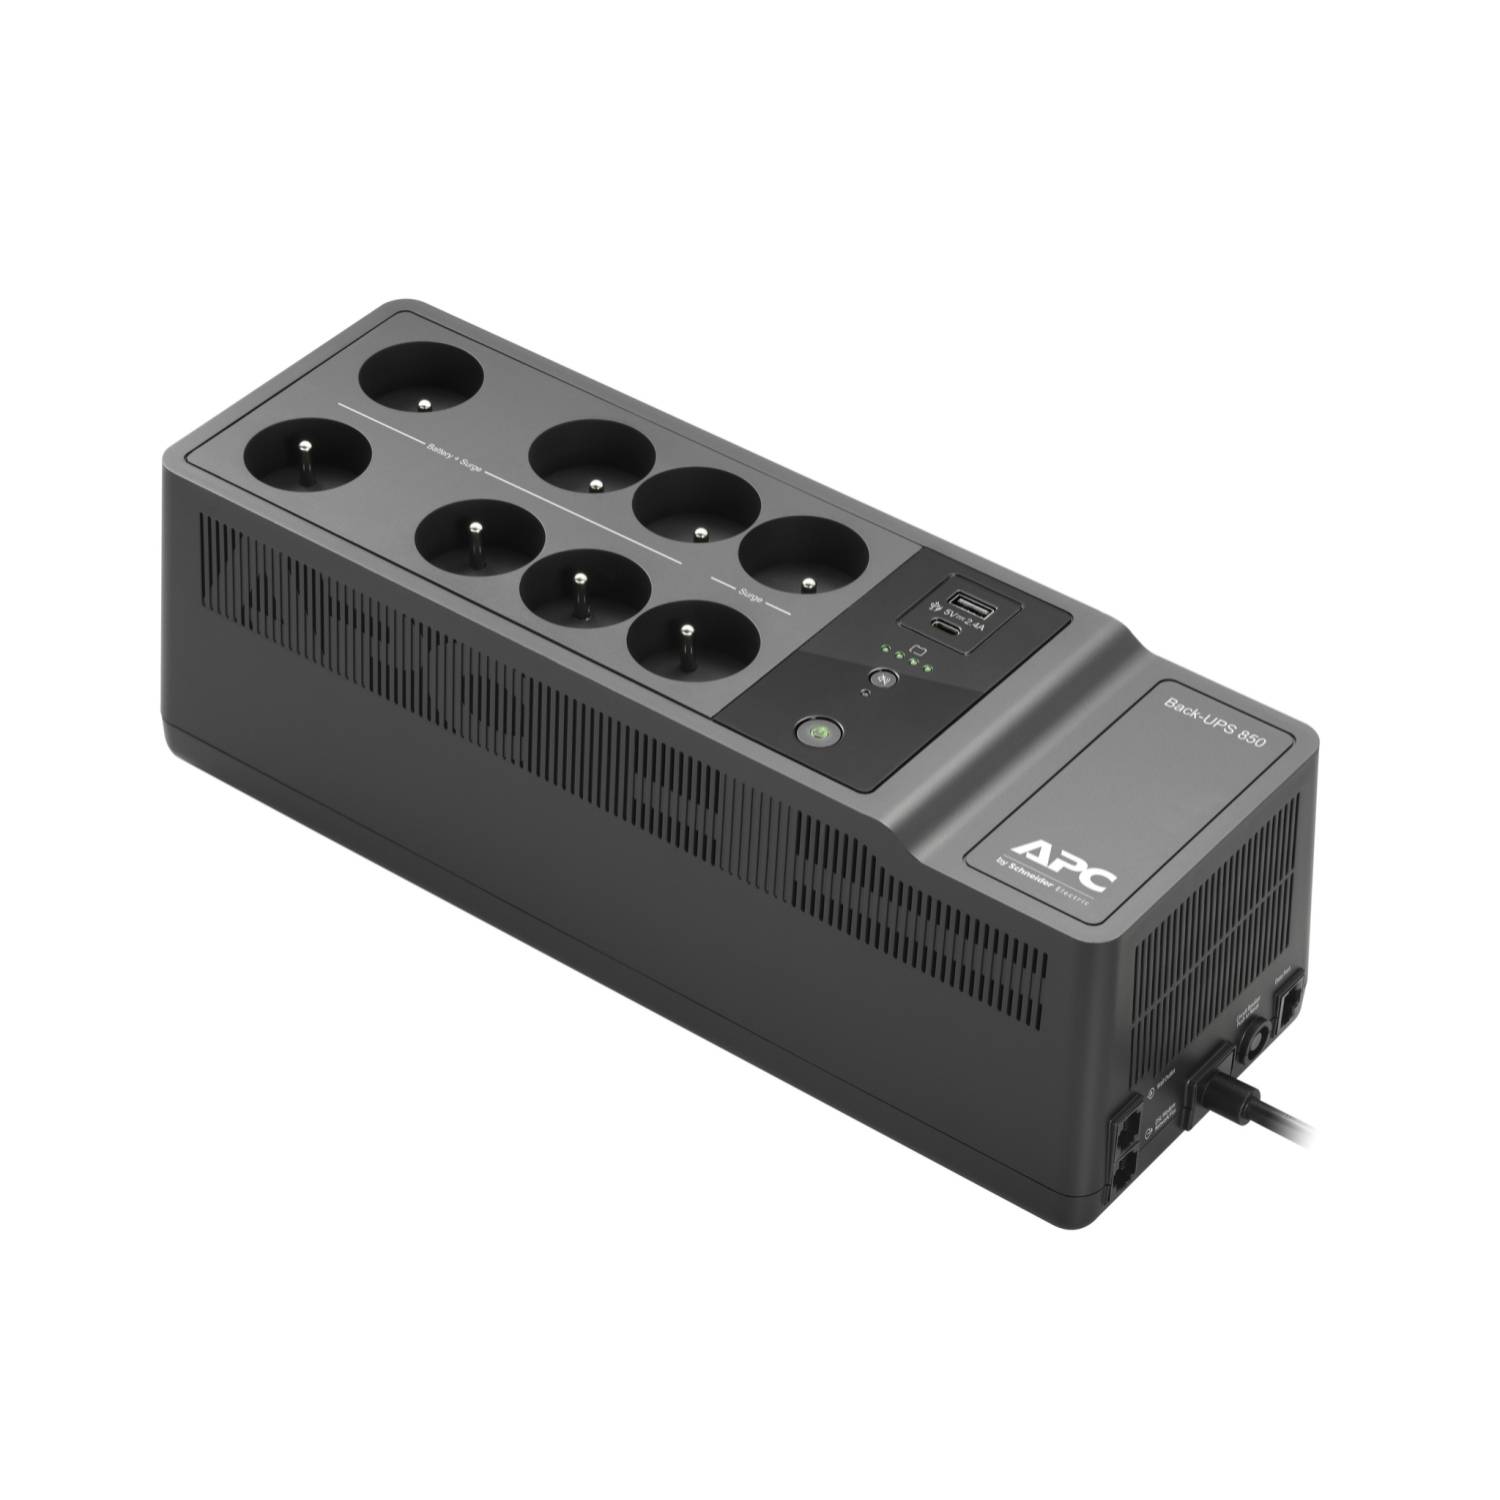 Rca Informatique - Image du produit : APC BACK-UPS 850VA 230V USB USB TYPE-C AND A CHARGING PORTS